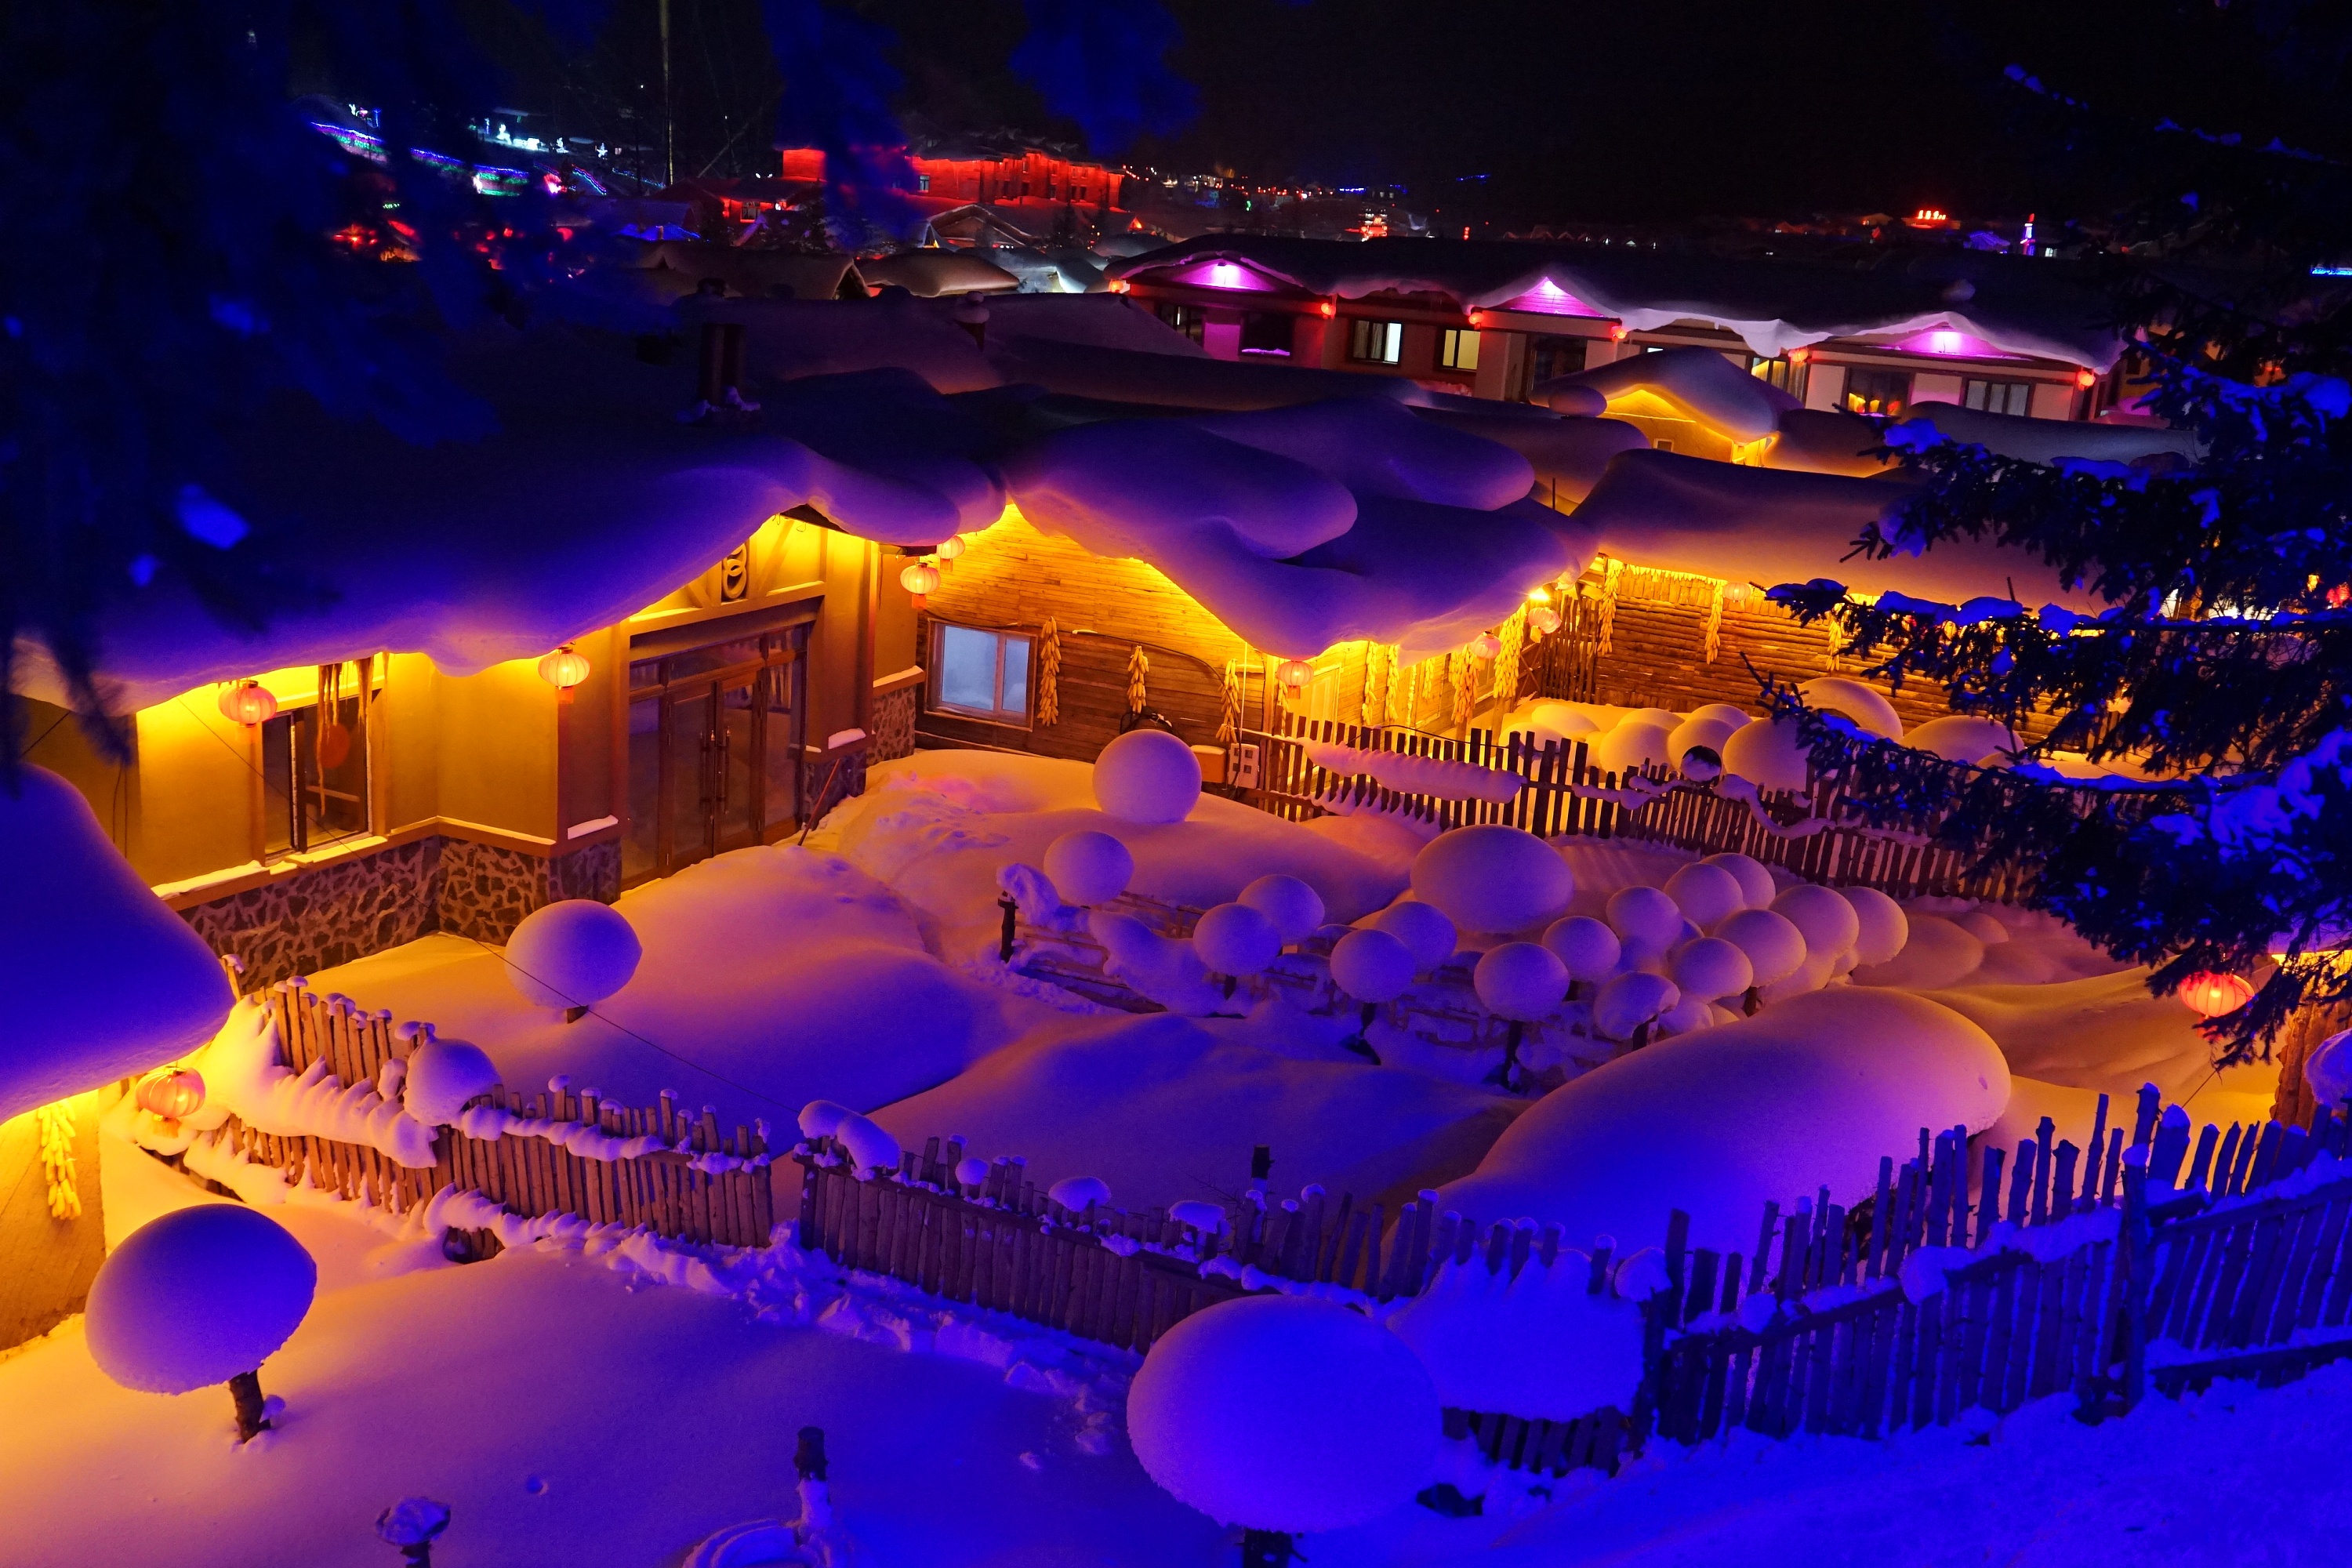 2018年1月1日元旦节哈尔滨雪乡冰雪大世界期待您的参与